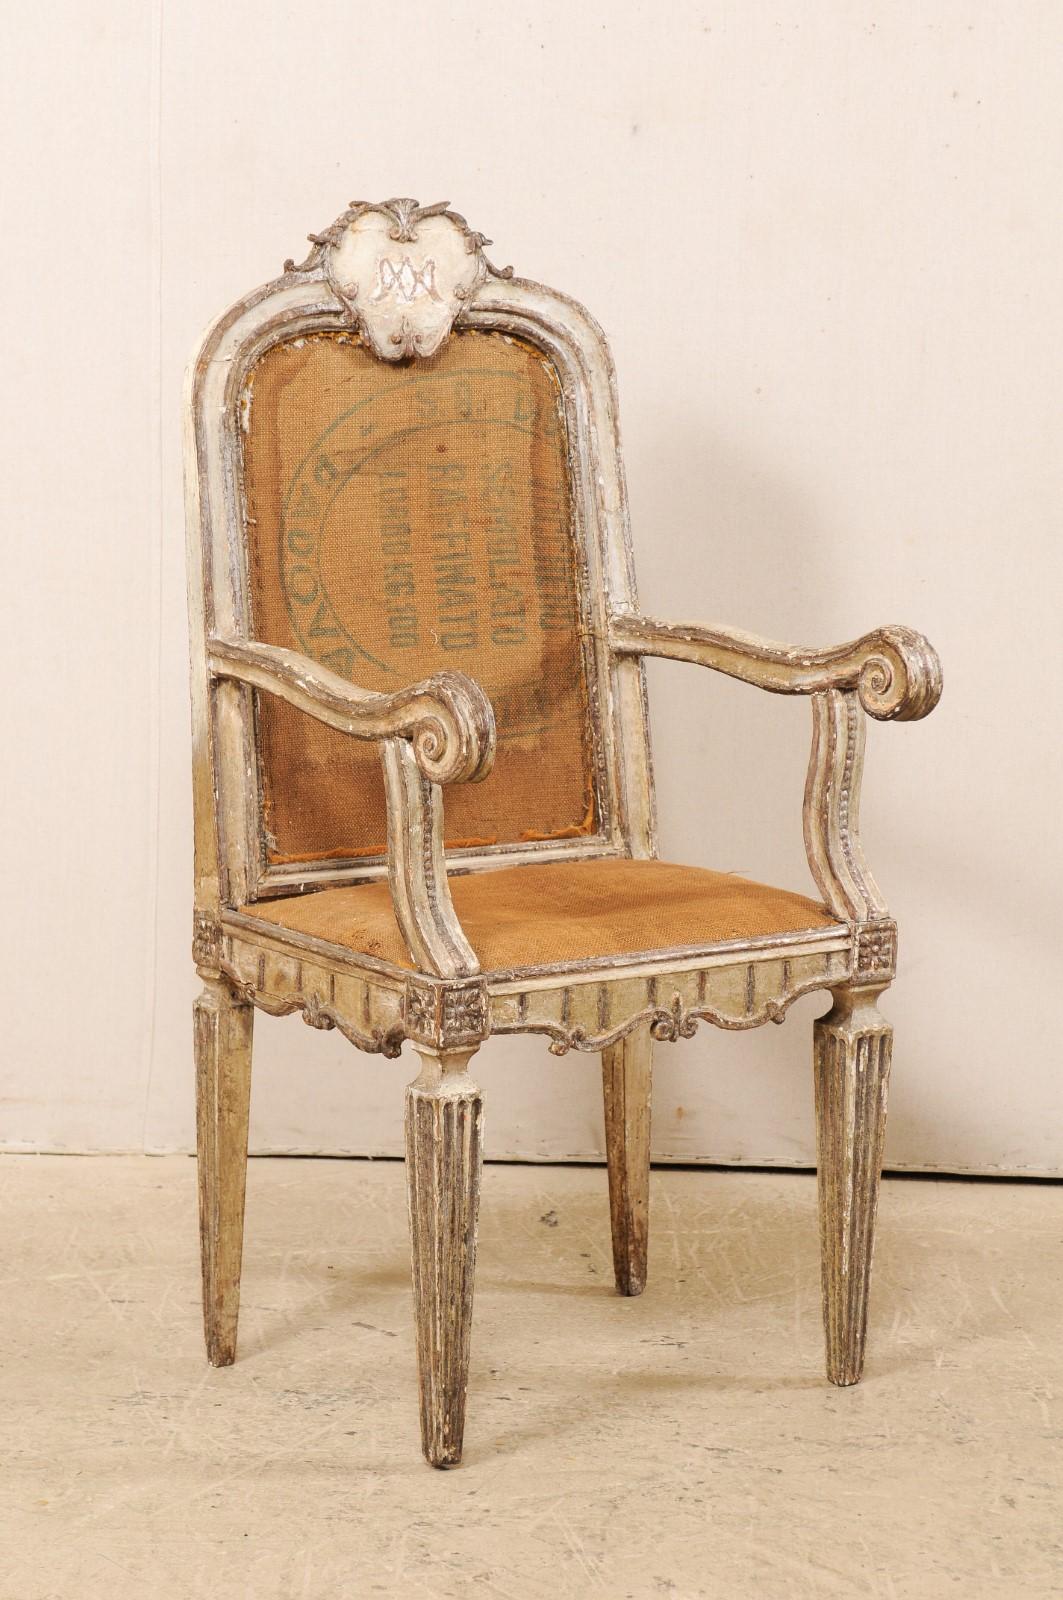 Ein einzelner italienischer Akzentsessel aus geschnitztem Holz aus dem 18. Jahrhundert. Dieser antike Stuhl aus Italien hat eine schön geschnitzte stilisierte Plakette, die seine Rückenlehne ziert. Die sanft geschwungenen Arme enden in geschnitzten